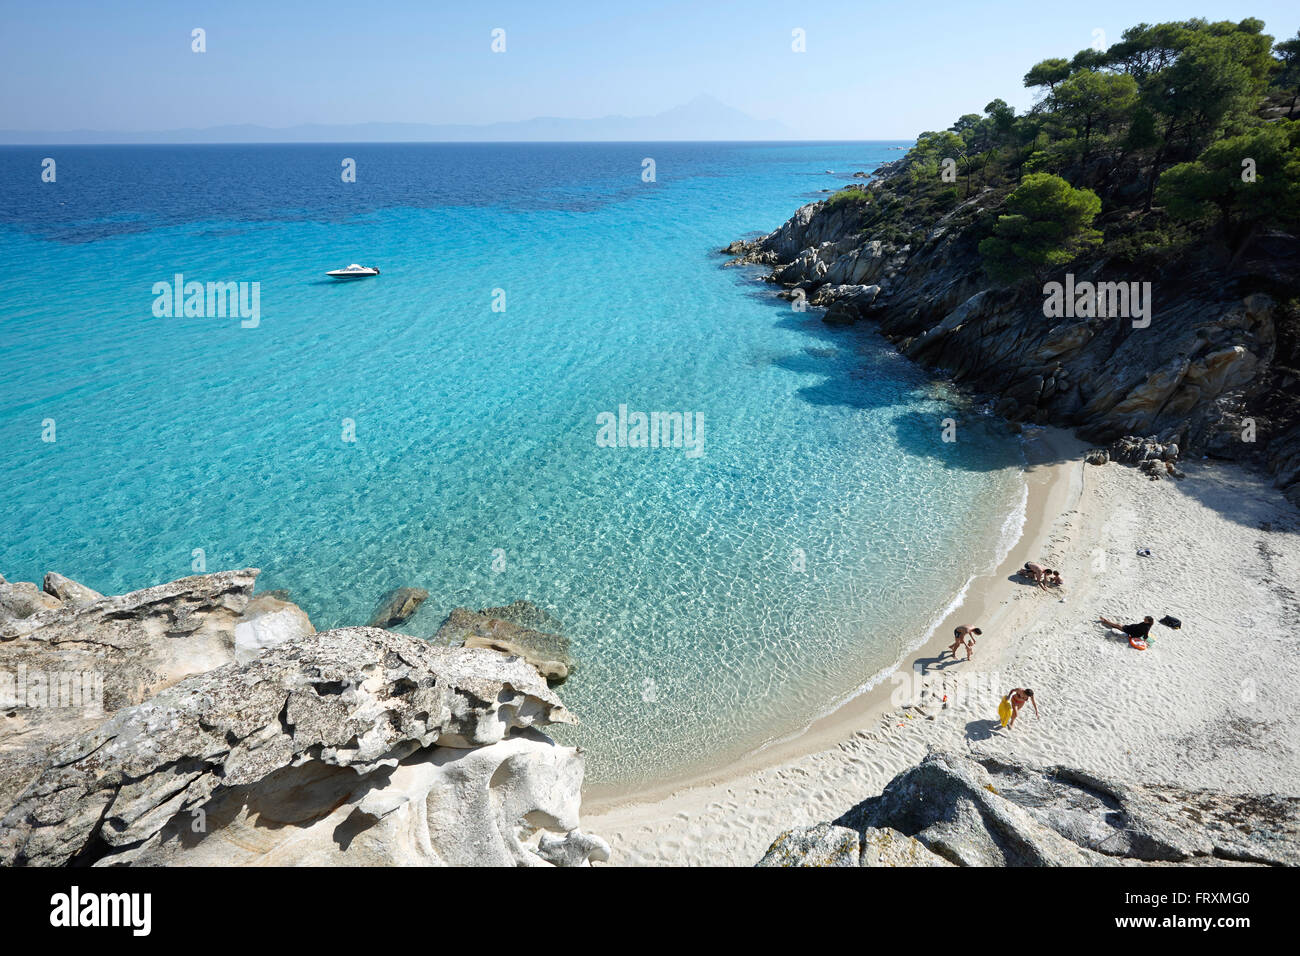 Kavourotripes Beach, Vourvourou, Sithonia, Chalkidiki, Greece Stock Photo